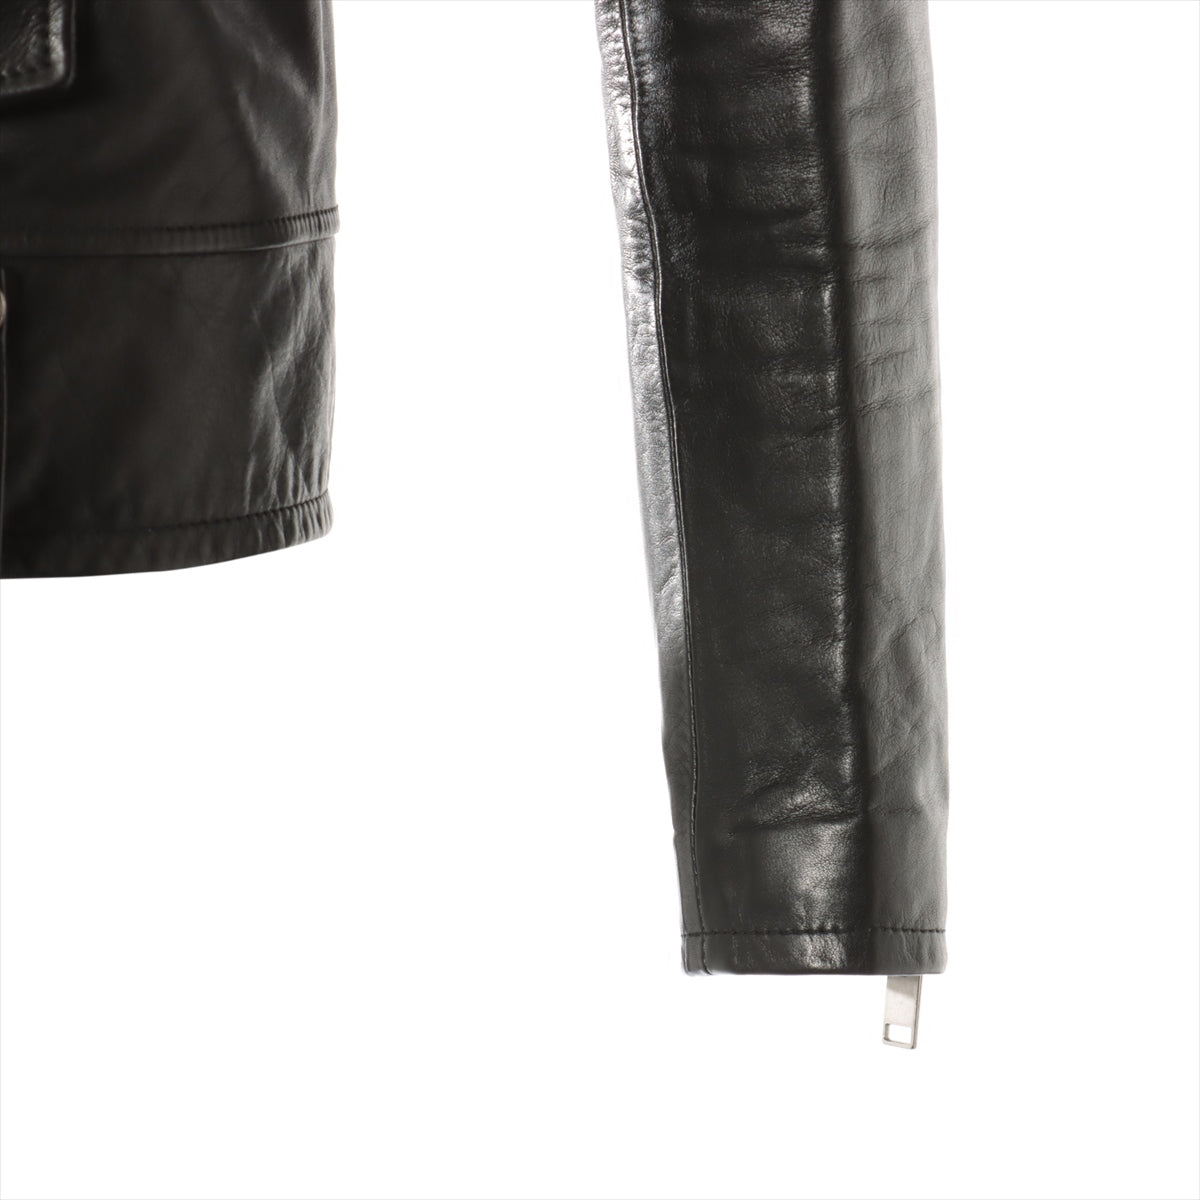 Saint Laurent classic motorcycles 2016 Leather Leather jacket 44 Men's Black